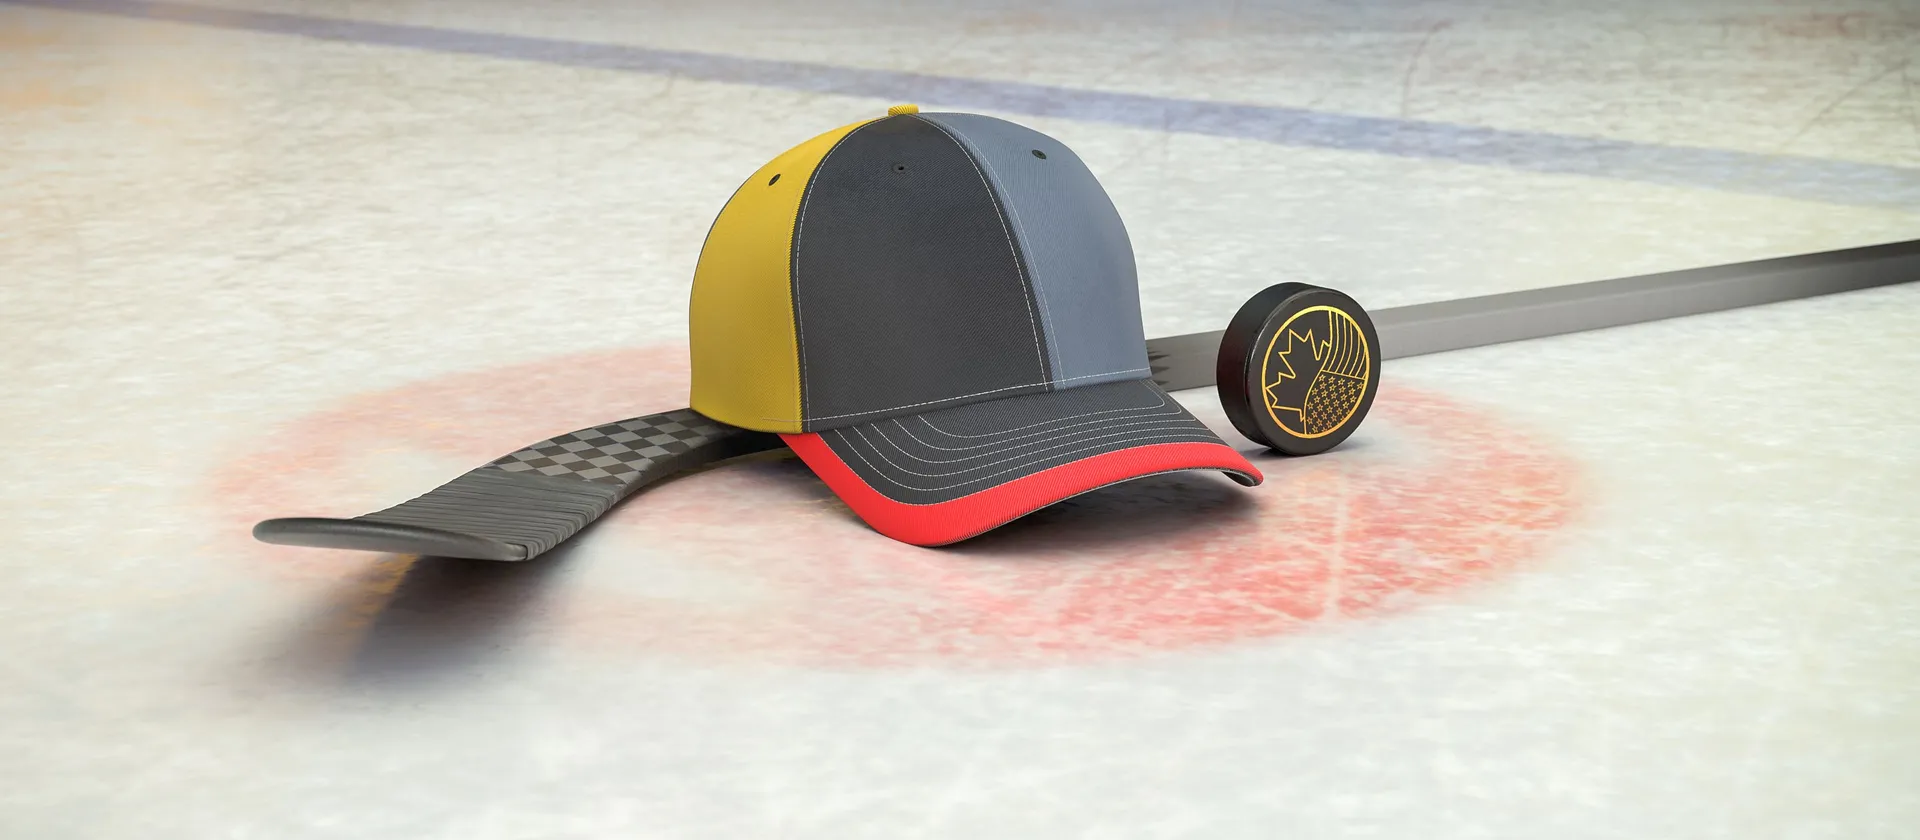 Bild på hockeyklubba, puck och en supporterkeps med NHL-laget Vegas Golden Knights färger